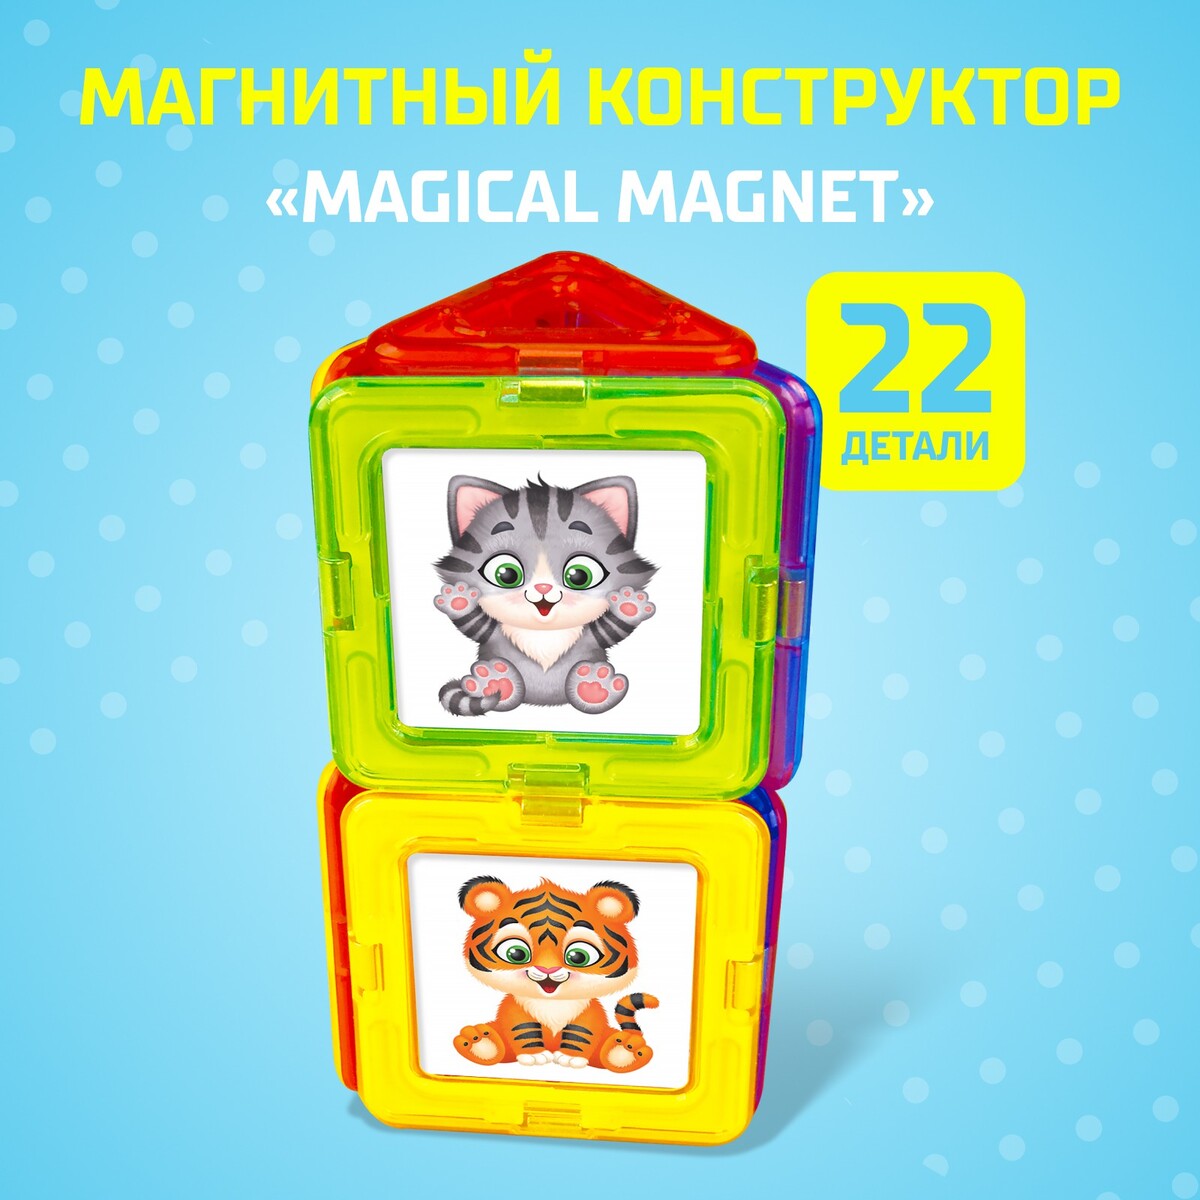 Магнитный конструктор magical magnet, 22 детали, детали матовые магнитный конструктор magical magnet 22 детали детали матовые